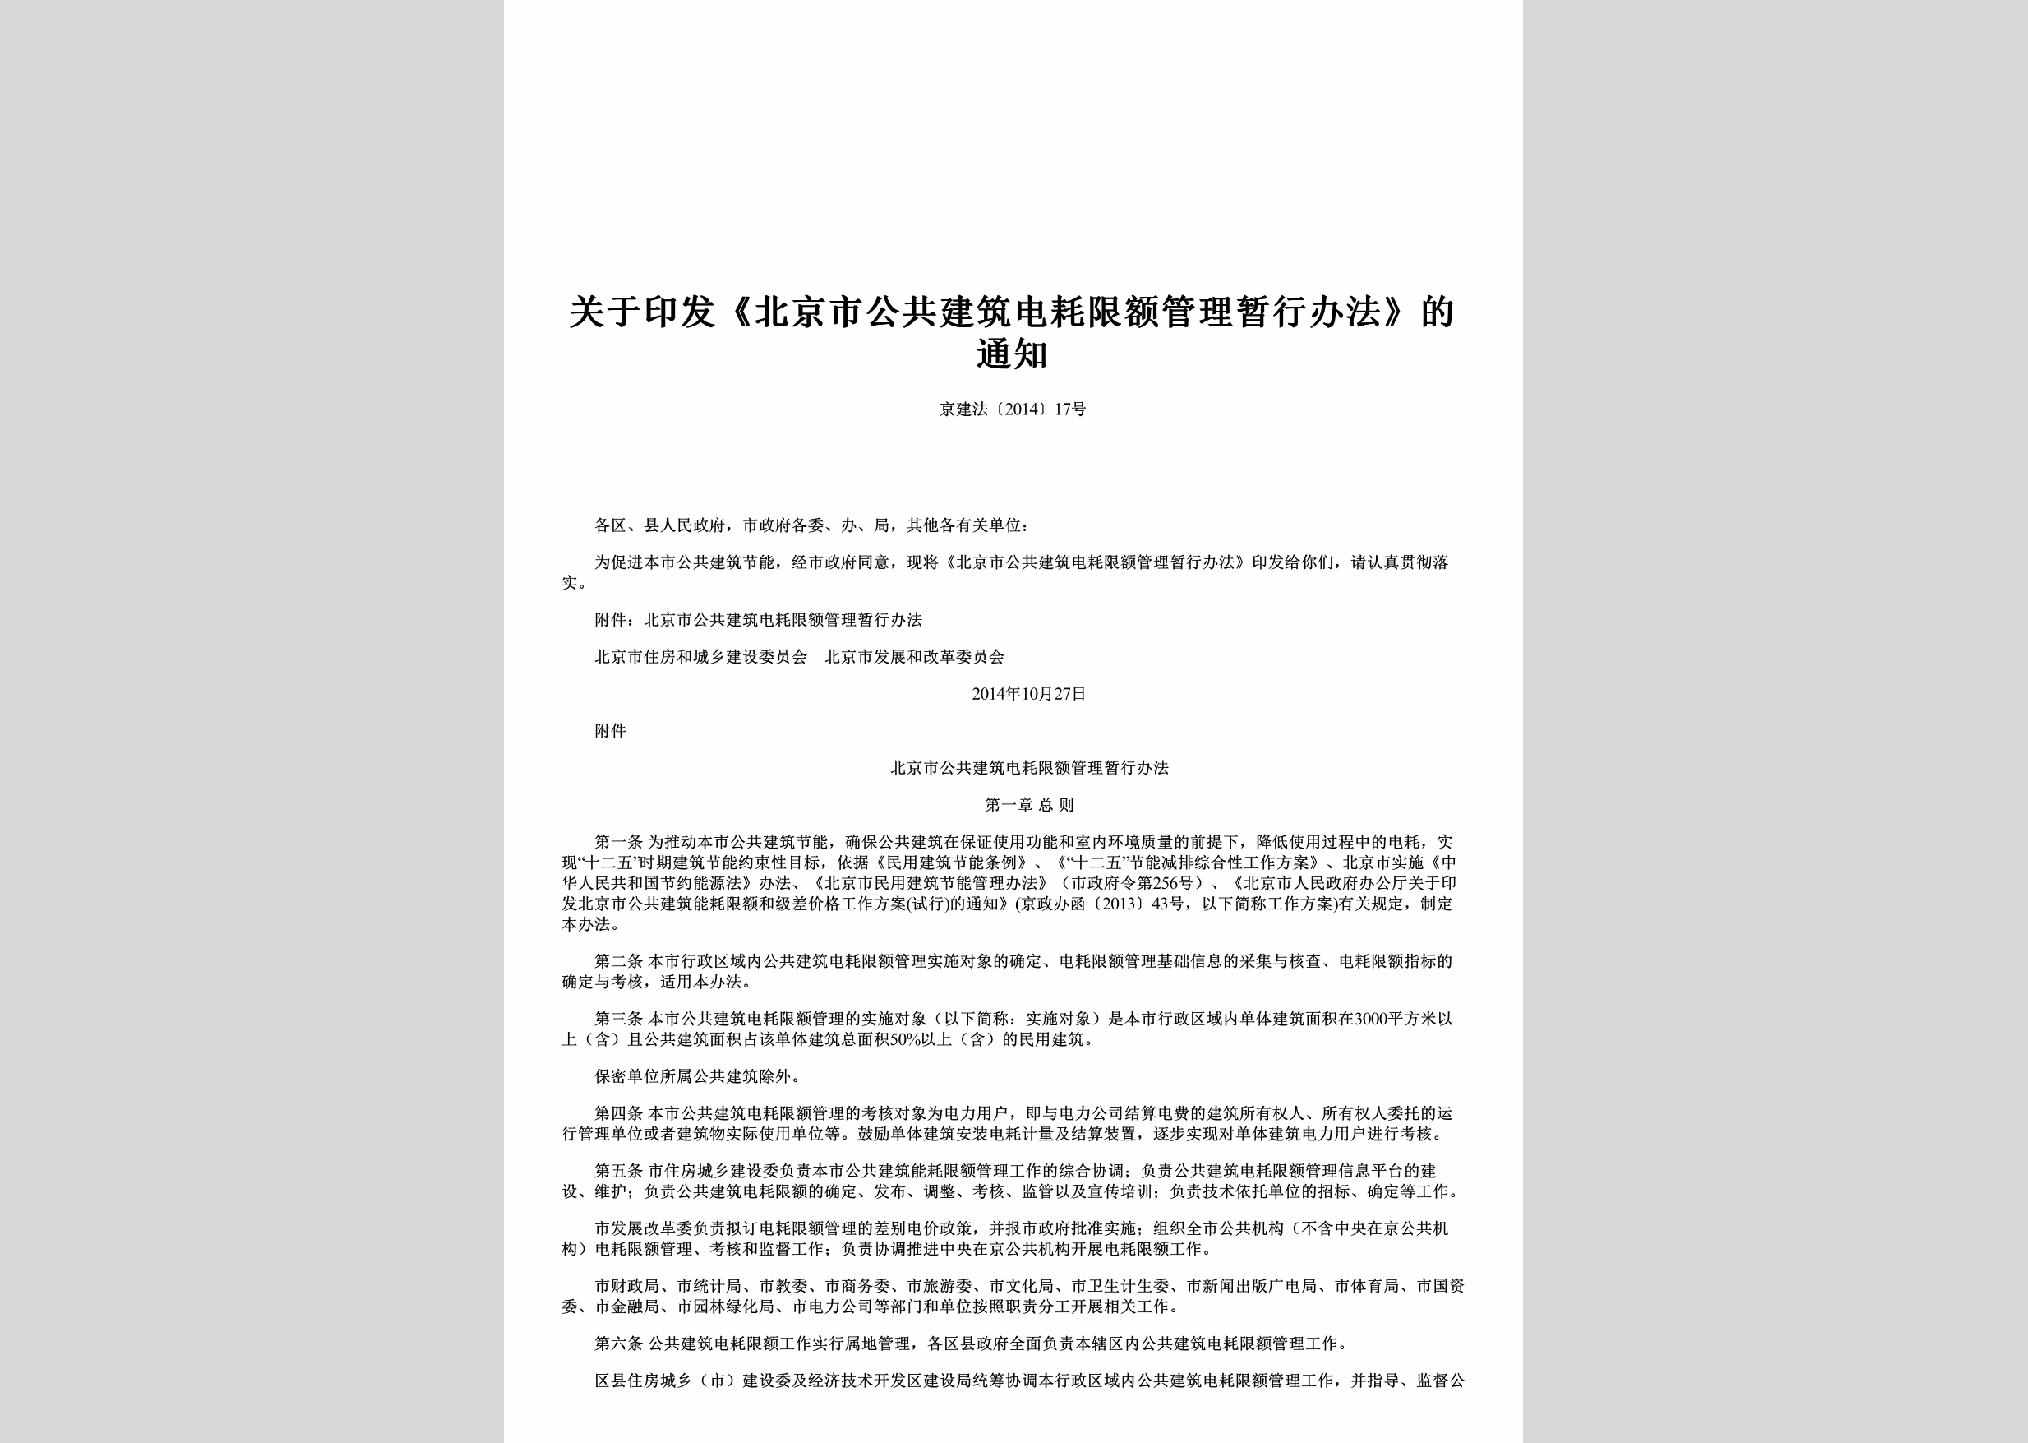 京建法[2014]17号：关于印发《北京市公共建筑电耗限额管理暂行办法》的通知